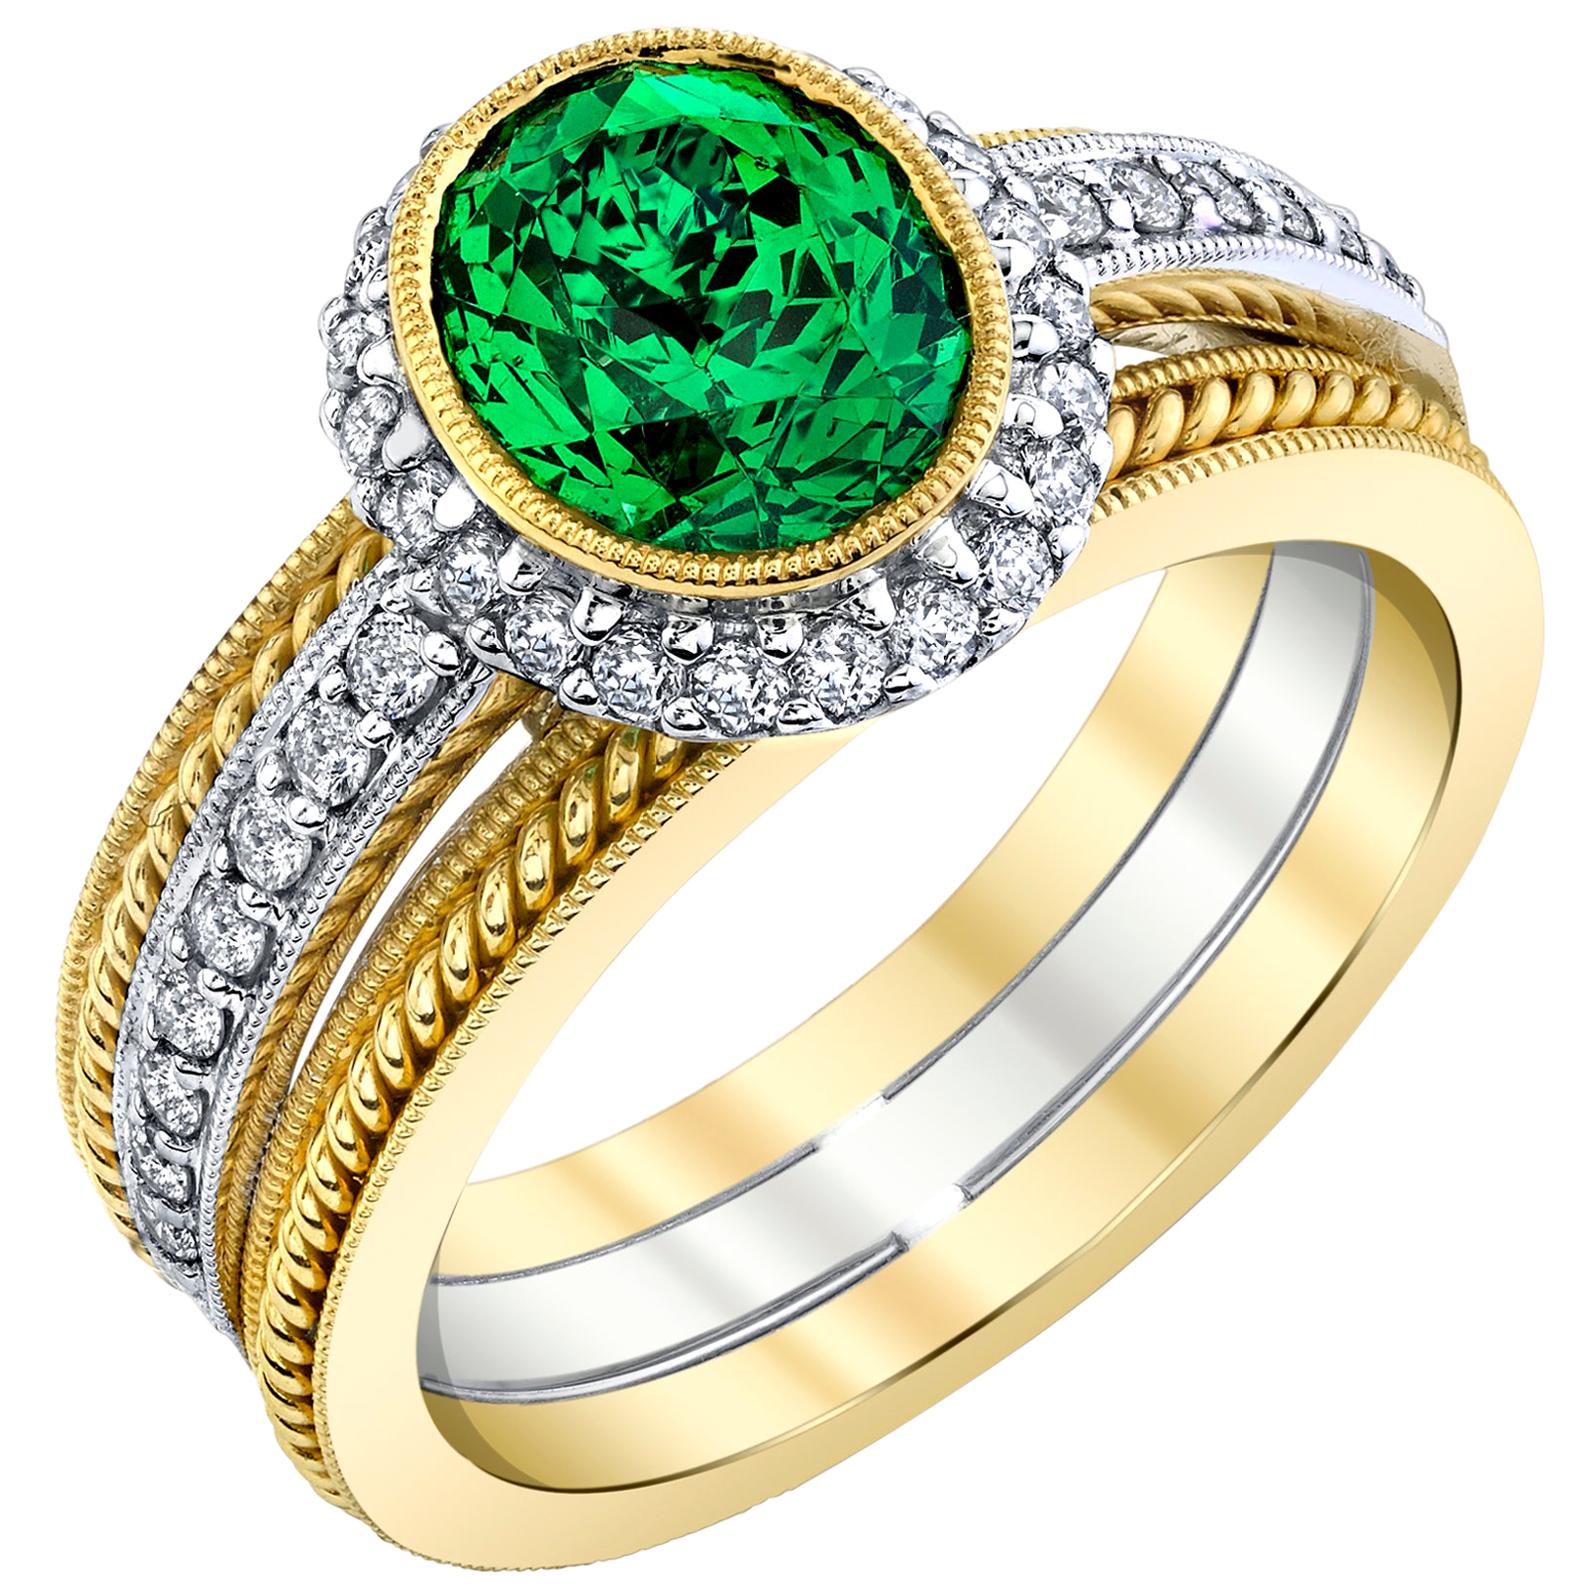 2.38 ct. Tsavorite Garnet & Diamond Halo 18k Yellow & White Gold Engagement Ring